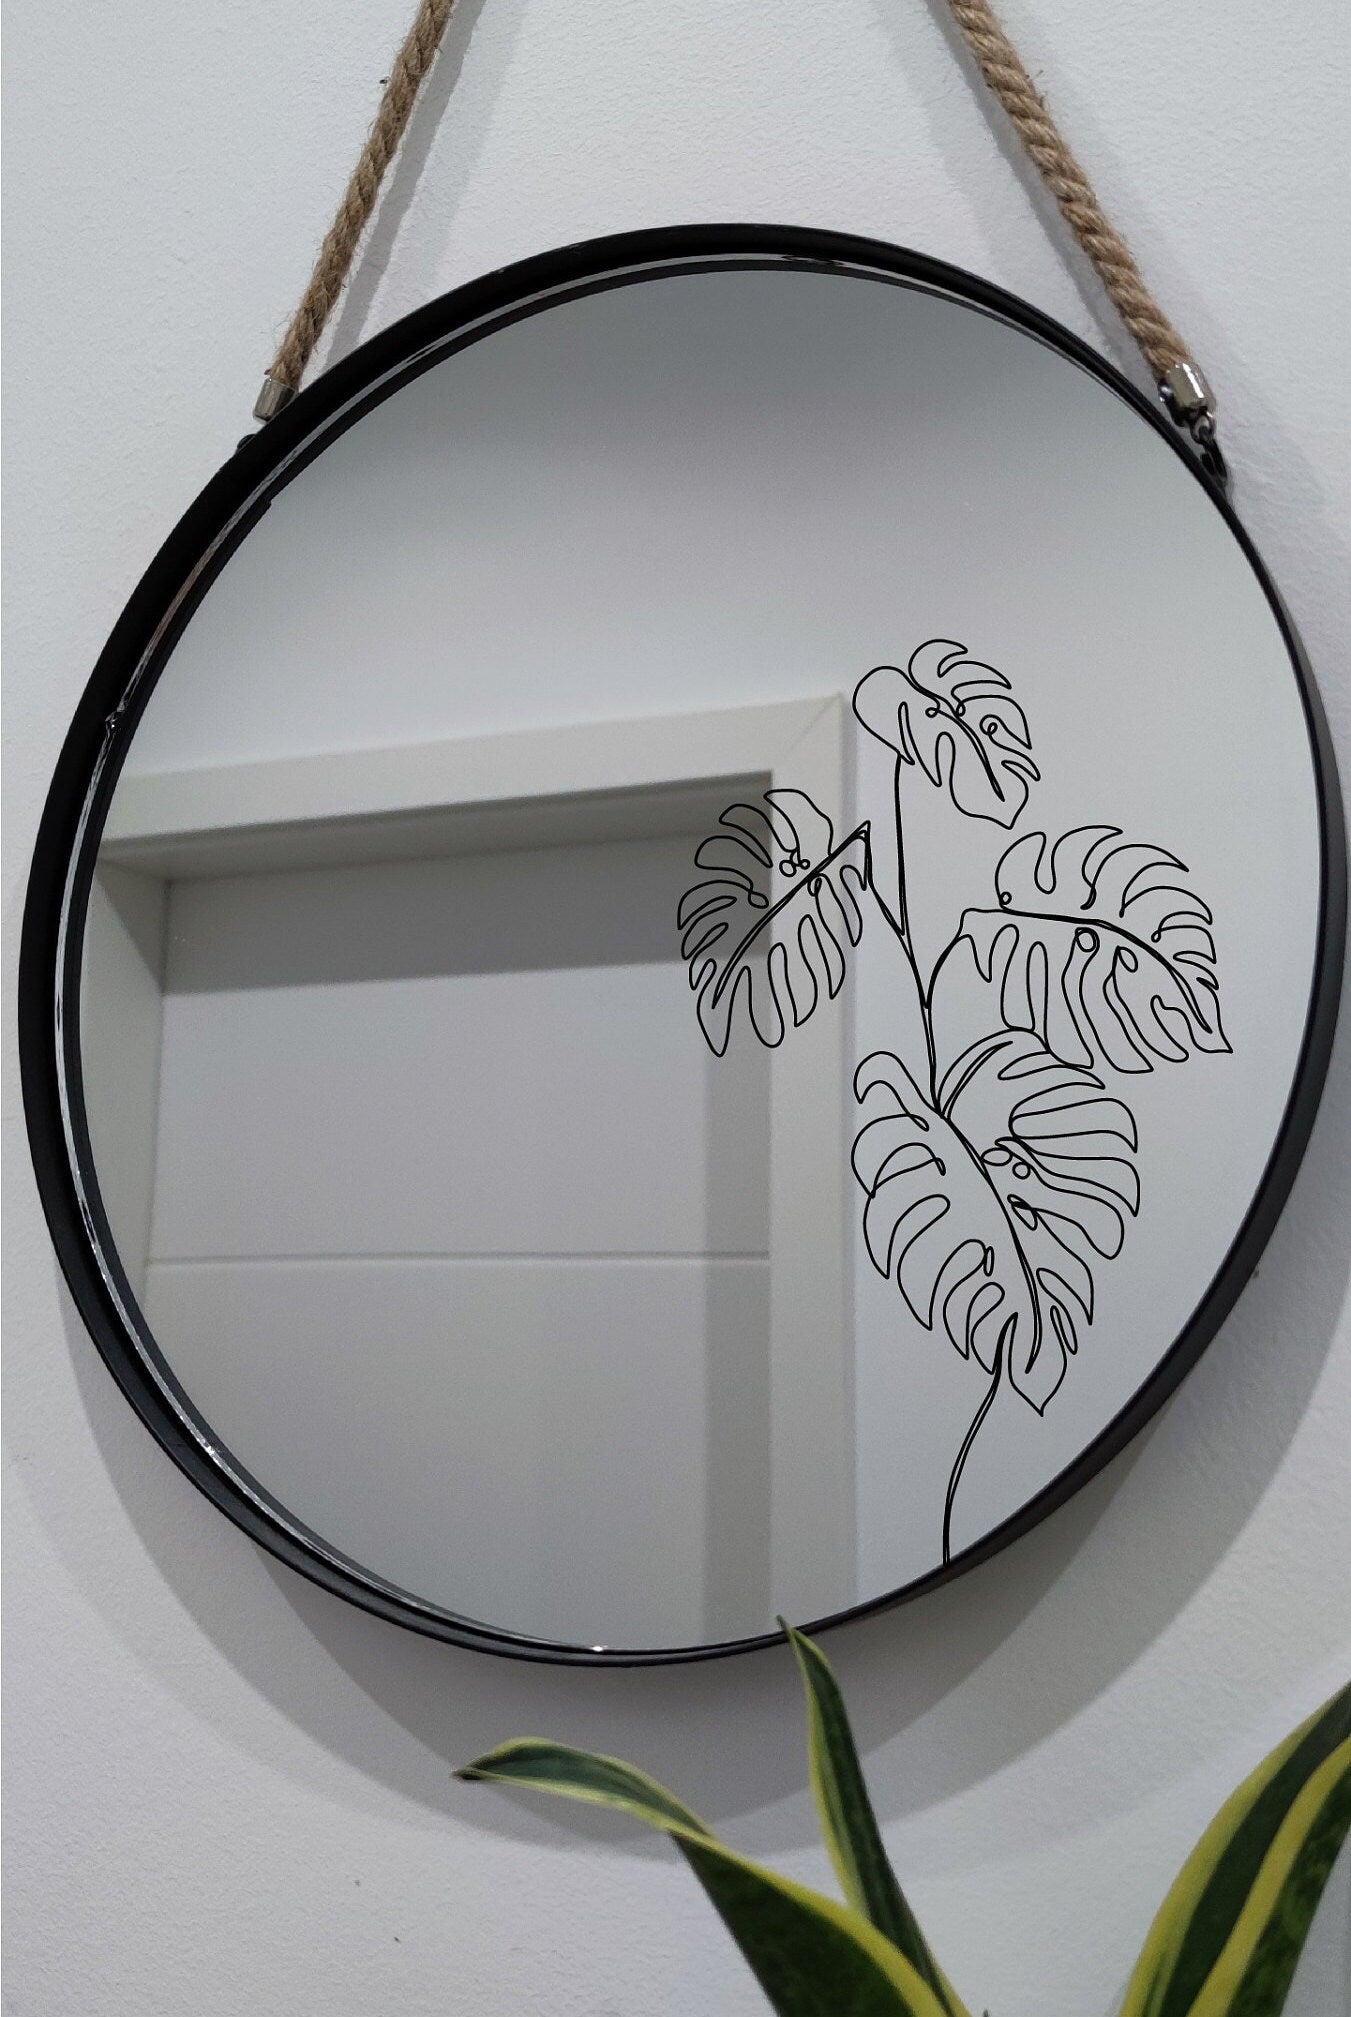 Mirror sticker lineart/mirror sticker 20cm/sticker/decal/decoration/gift/gift idea/bathroom decoration/mirror decoration